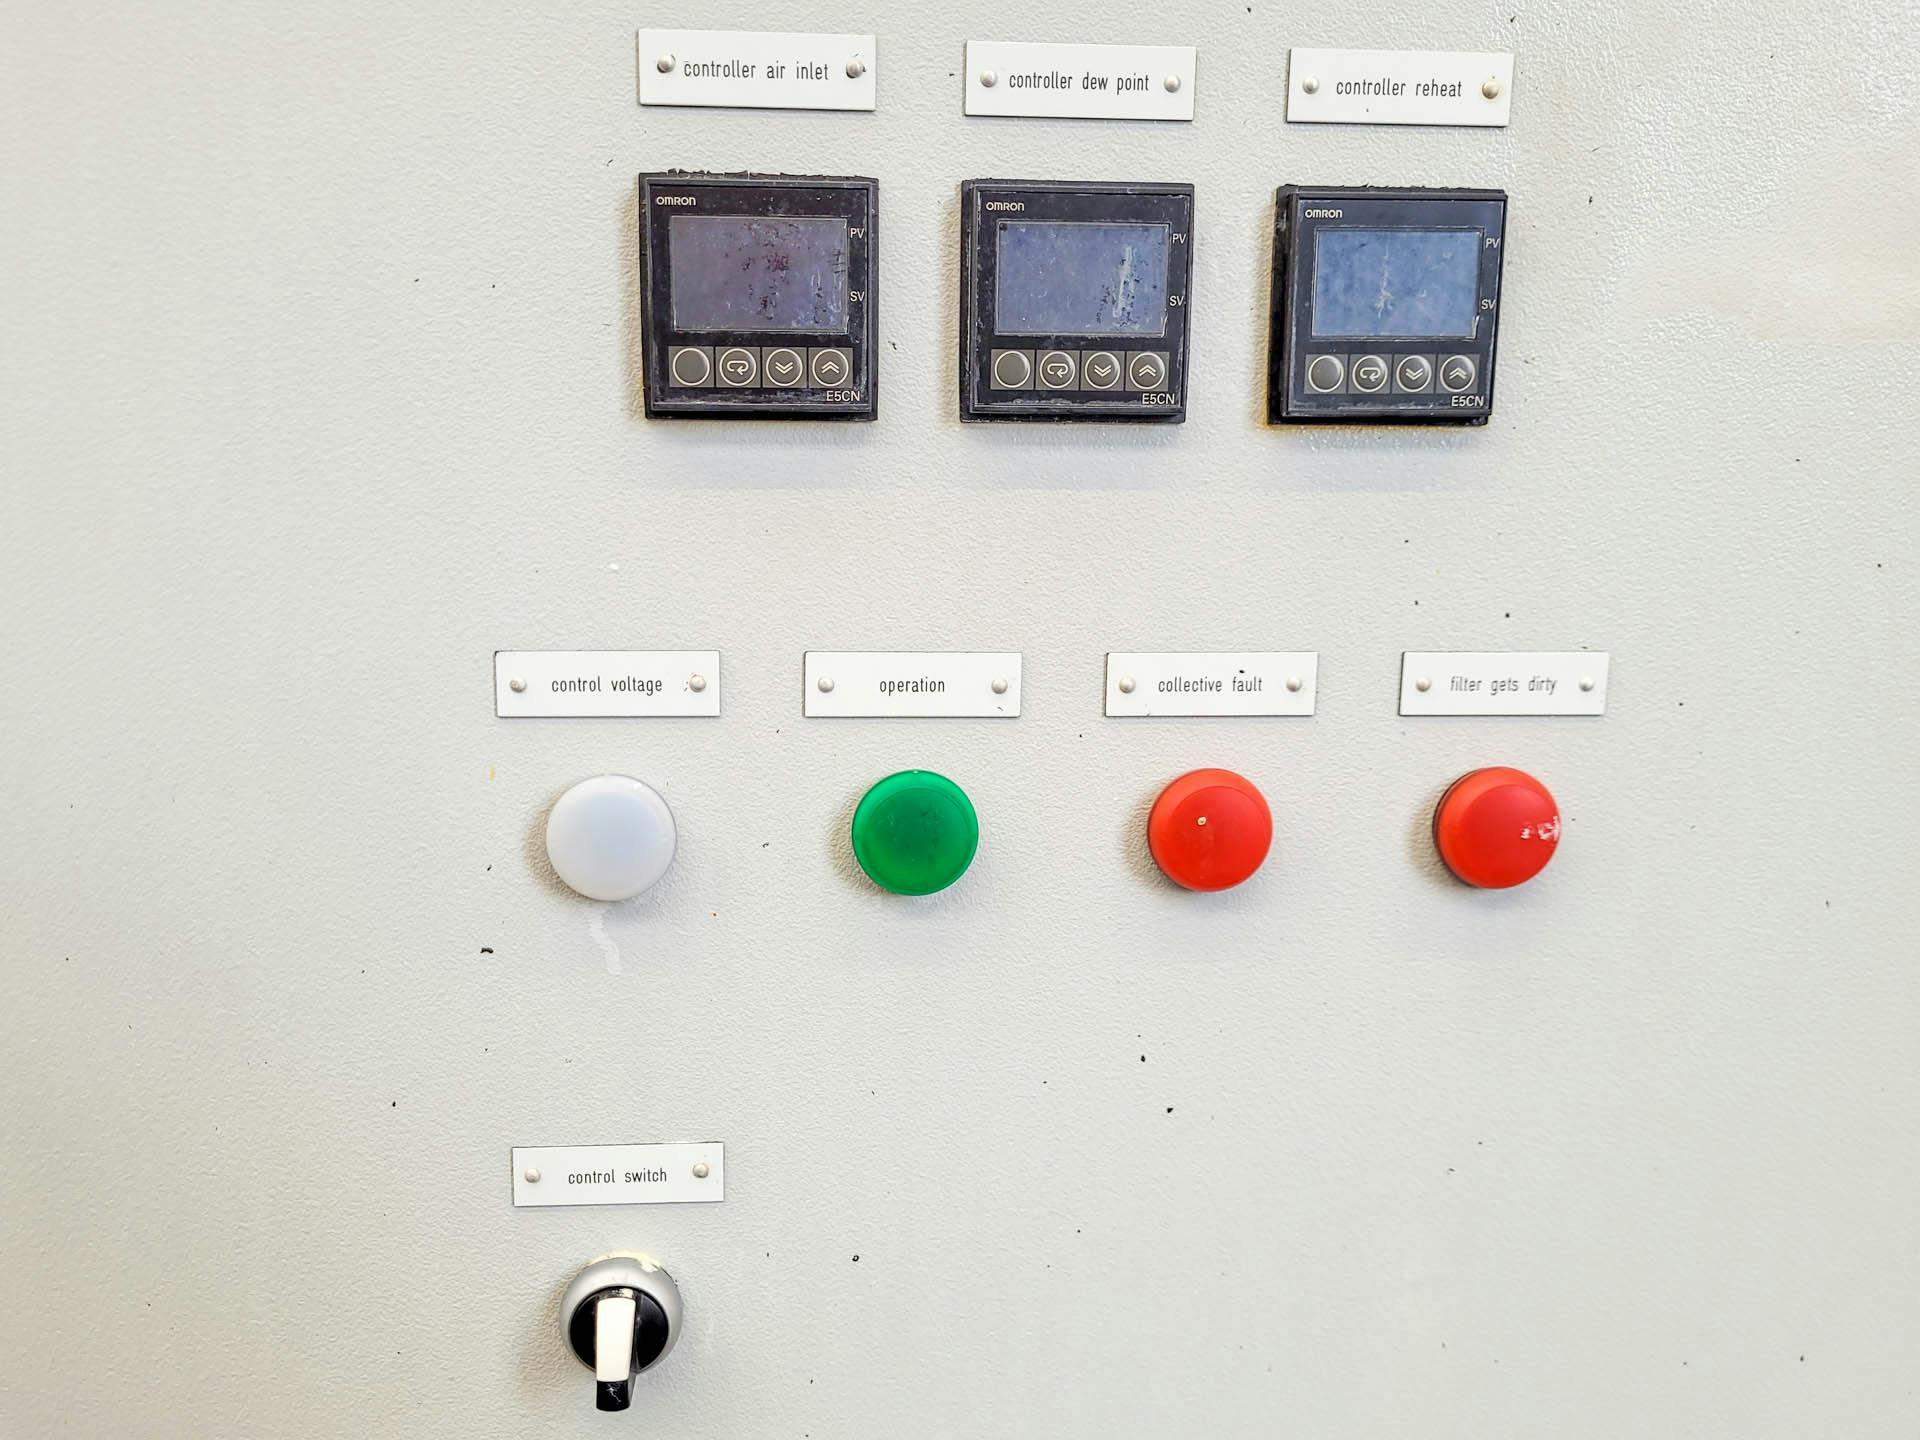 Weisshaar LKTA 120 - Temperature control unit - image 6